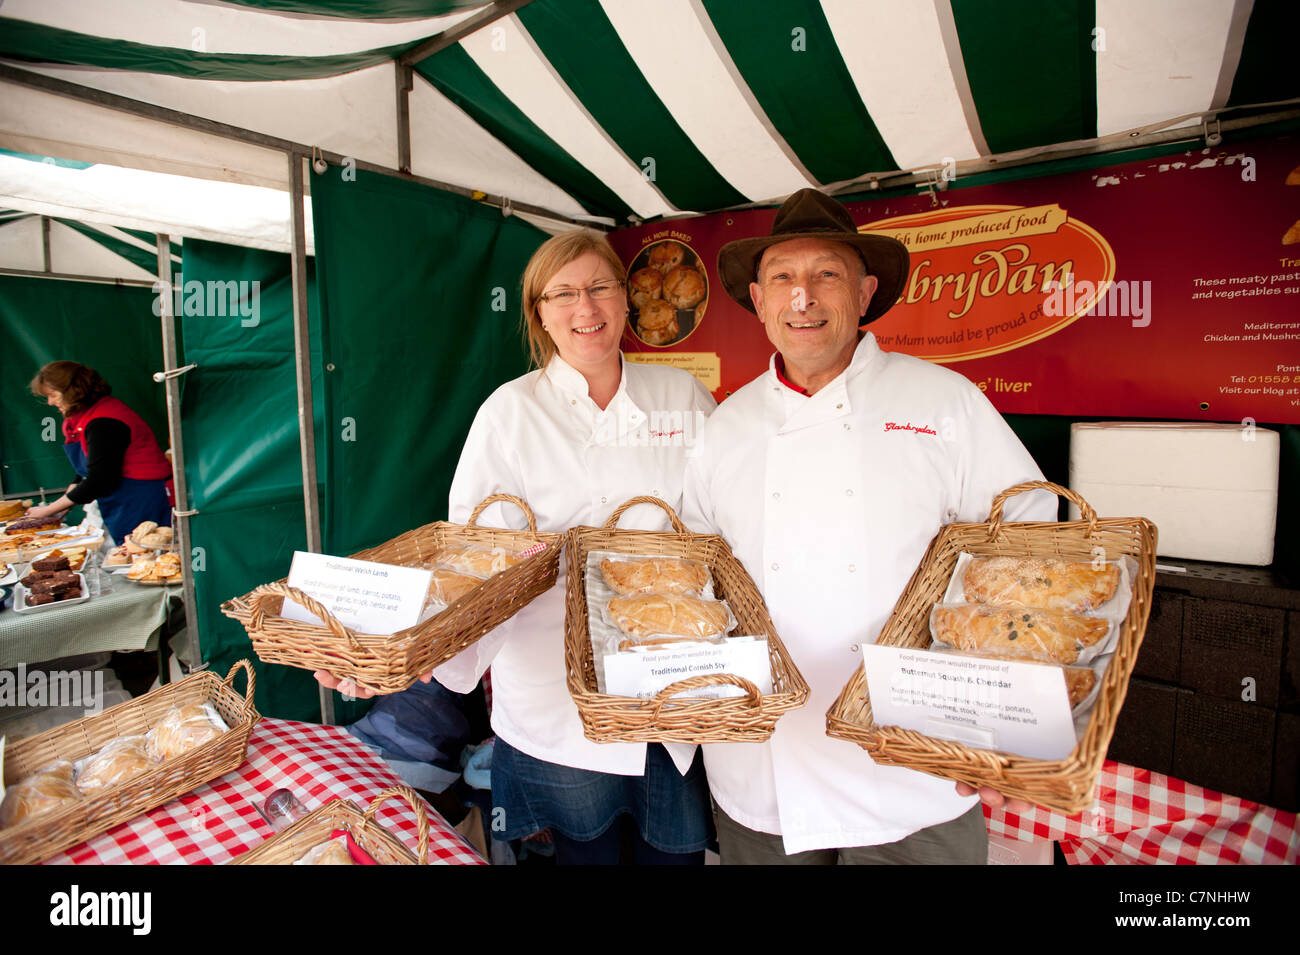 Un couple de vendre la viande fraîchement cuit au four et des tartes à Aberystwyth Septembre 2011 Salon de l'alimentation, le Pays de Galles, Royaume-Uni Banque D'Images